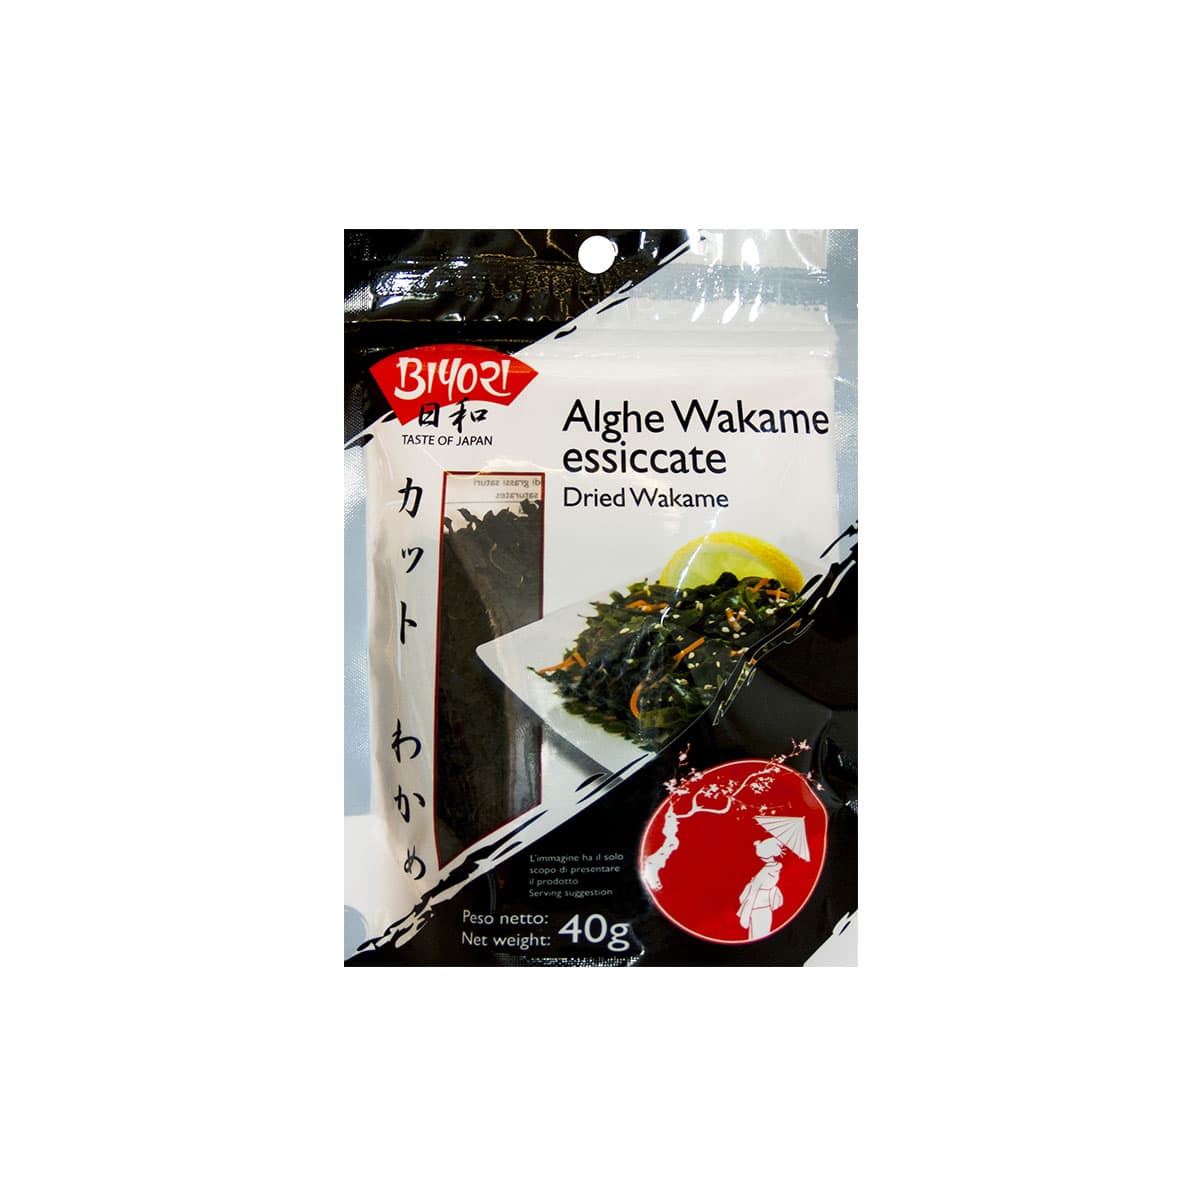 Alghe wakame essiccate 40g